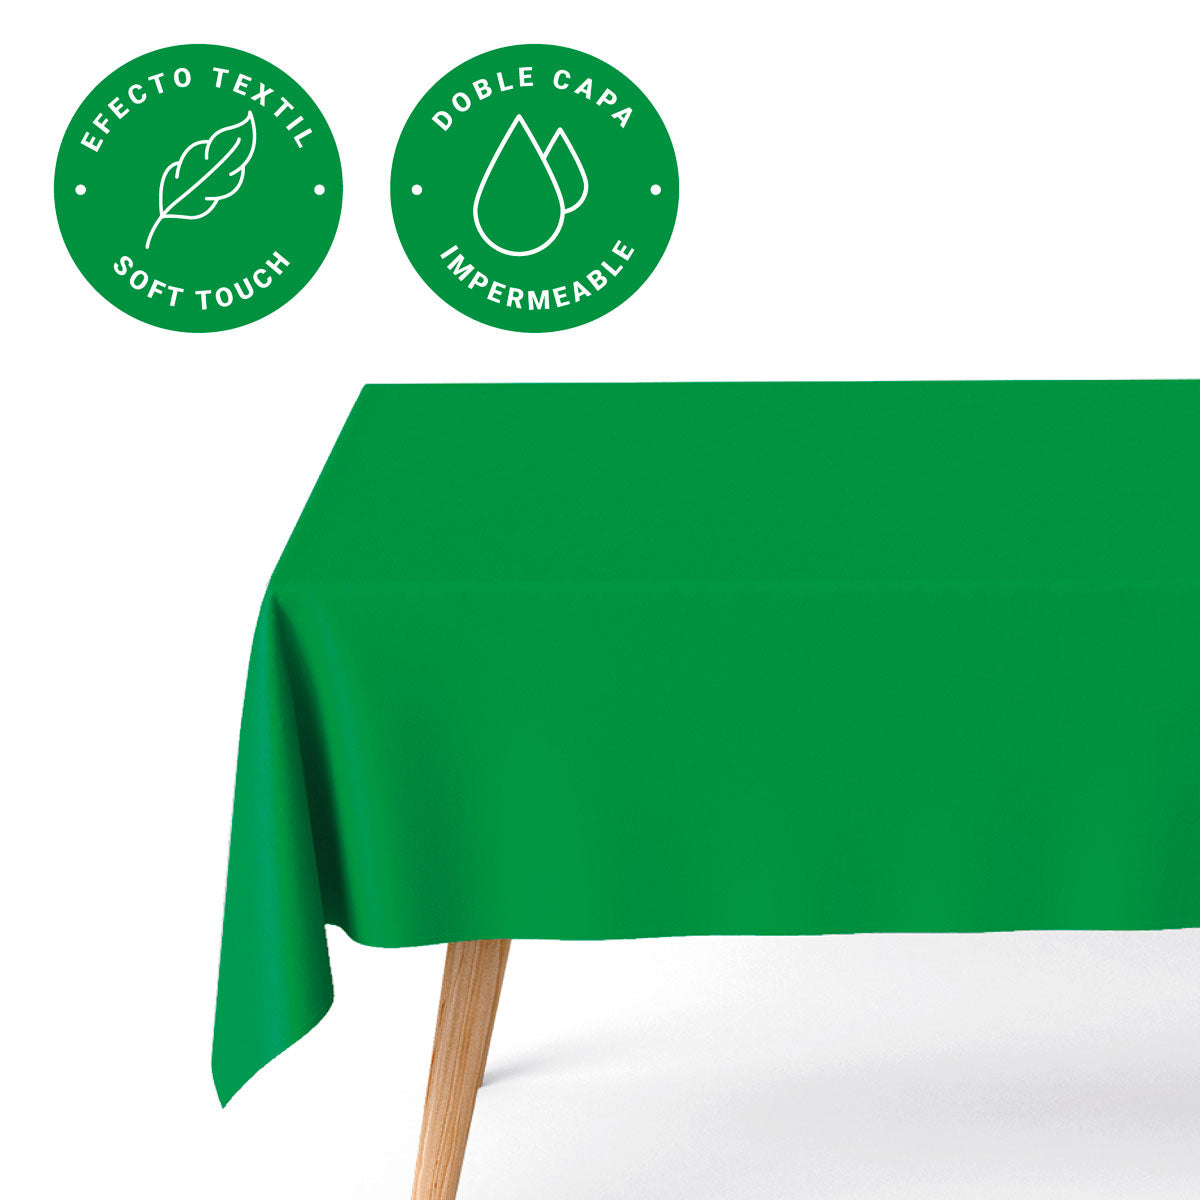 Mantel Plegado Impermeable 1,20 x 1,80 m Verde